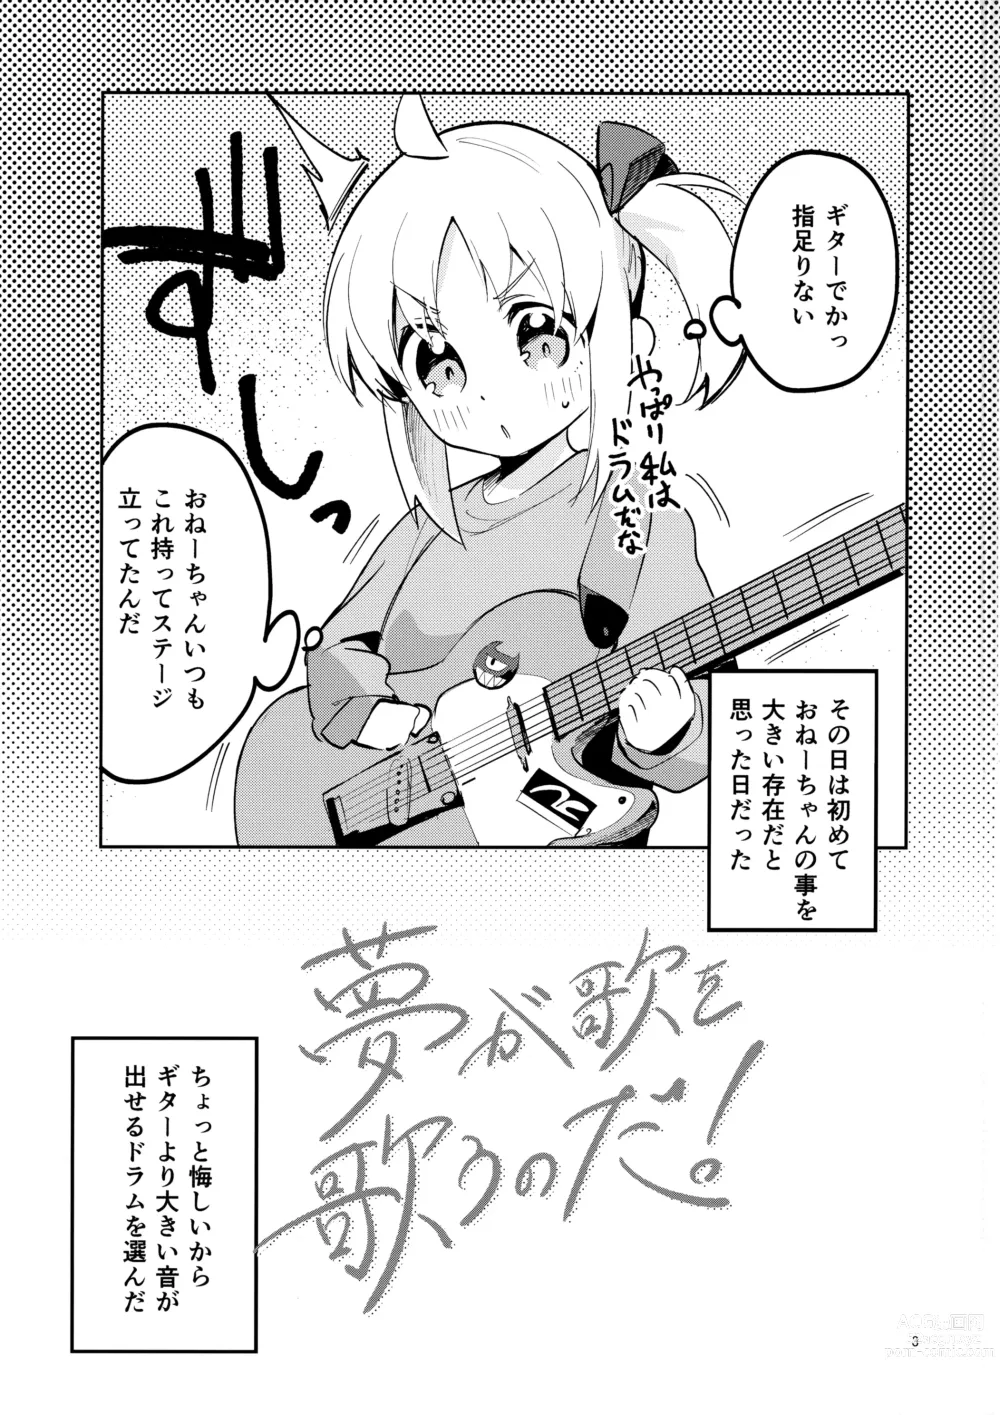 Page 2 of doujinshi Yume ga Uta o Utau no da!